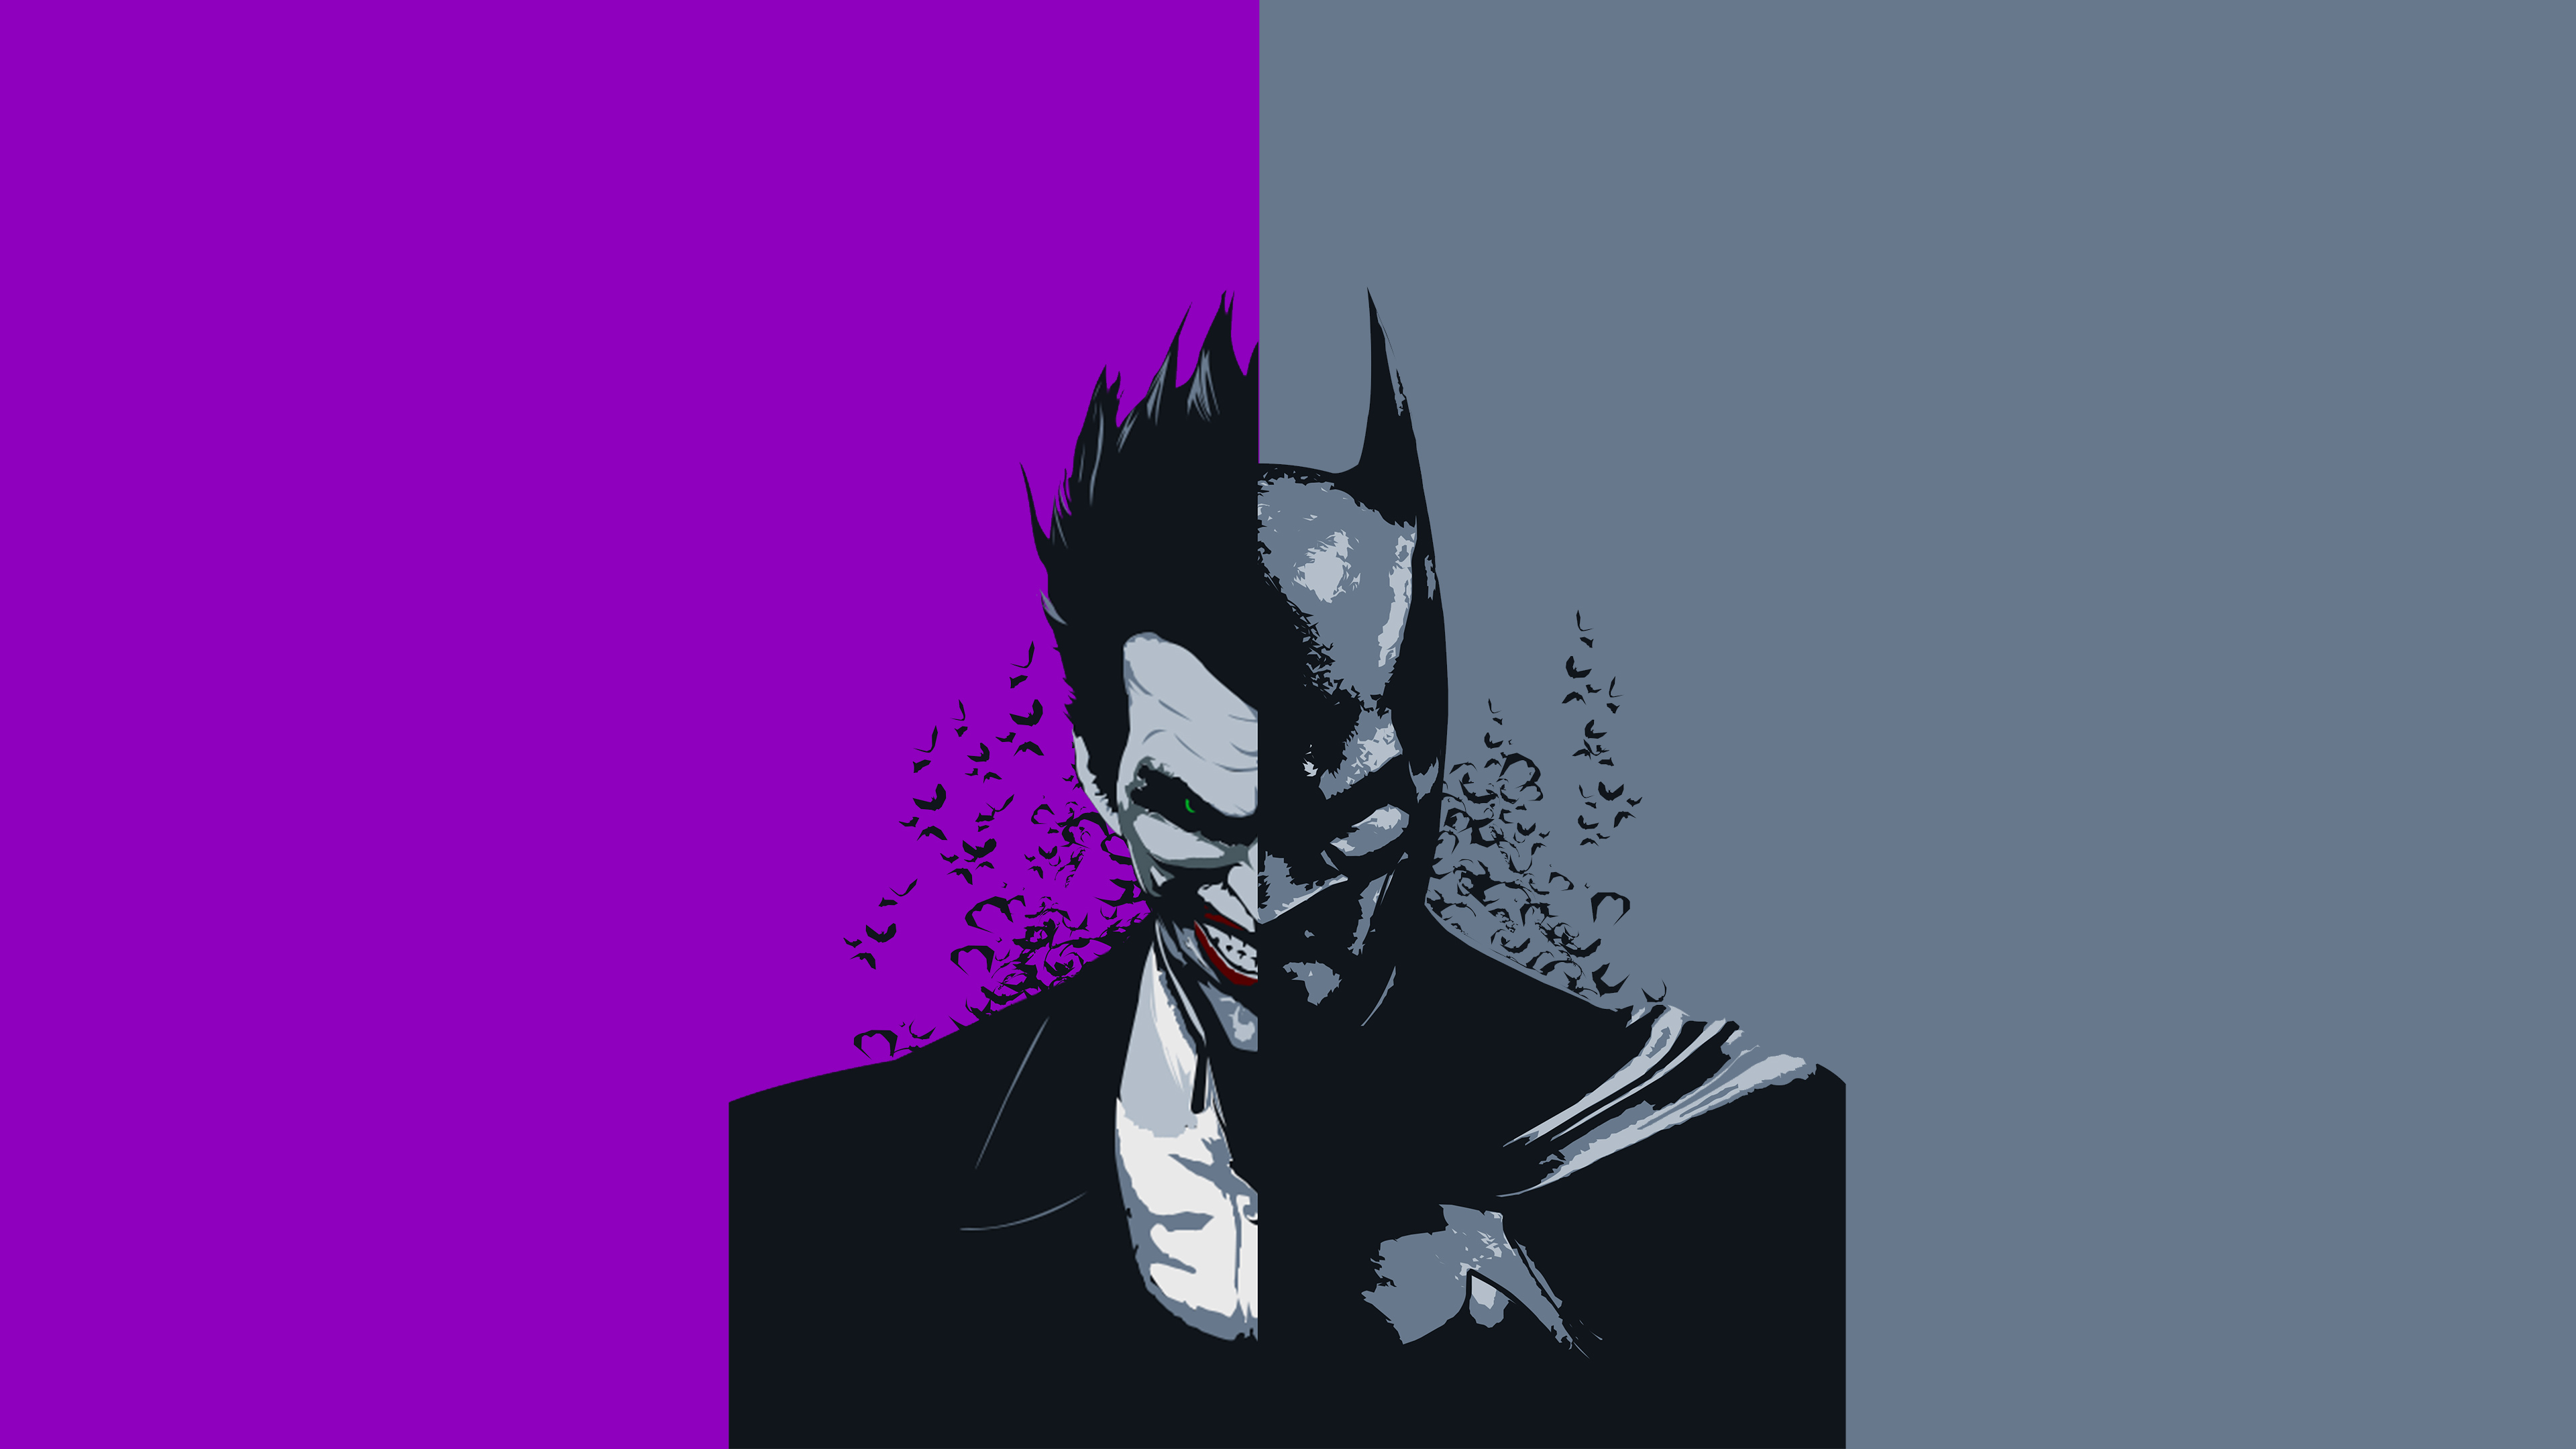 Batman Joker New Art 4k - Joker And Batman Wallpaper Hd - HD Wallpaper 